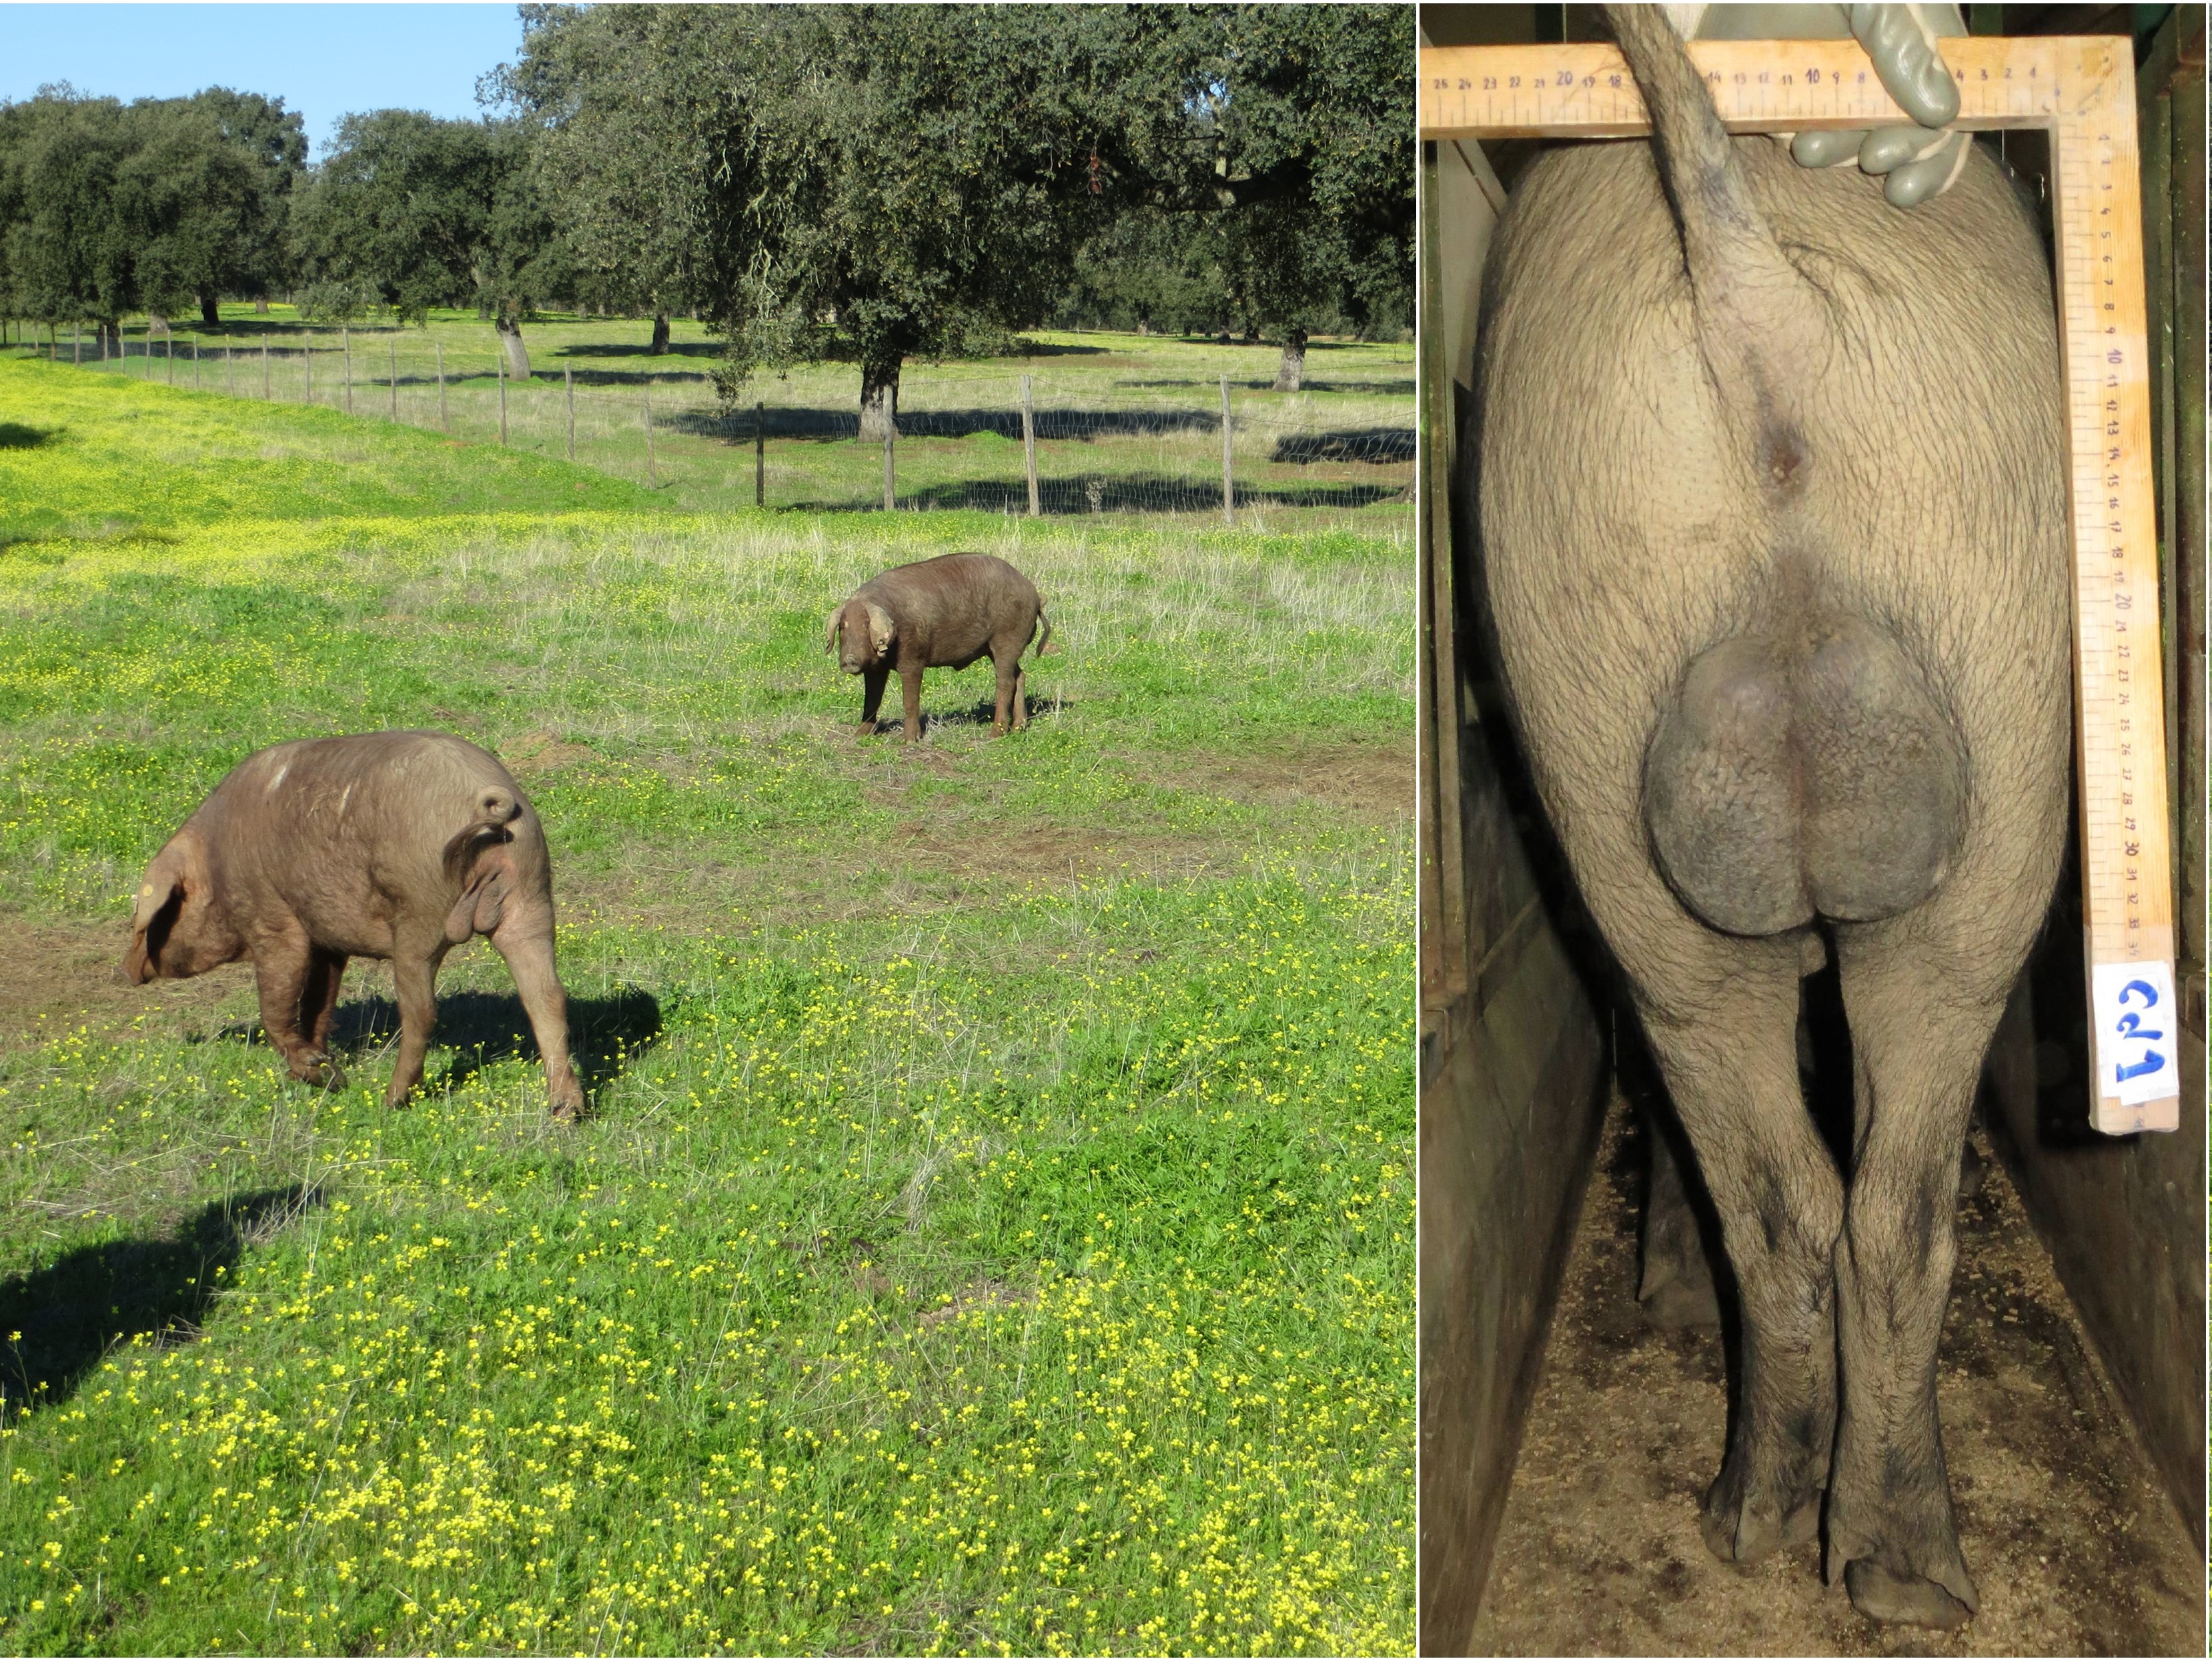 Suínos ibéricos imunocastrados (à esquerda) no início da montanera na Fazenda Valdesequera e machos inteiros (à direita) da mesma raça e idade para comparação do tamanho testicular